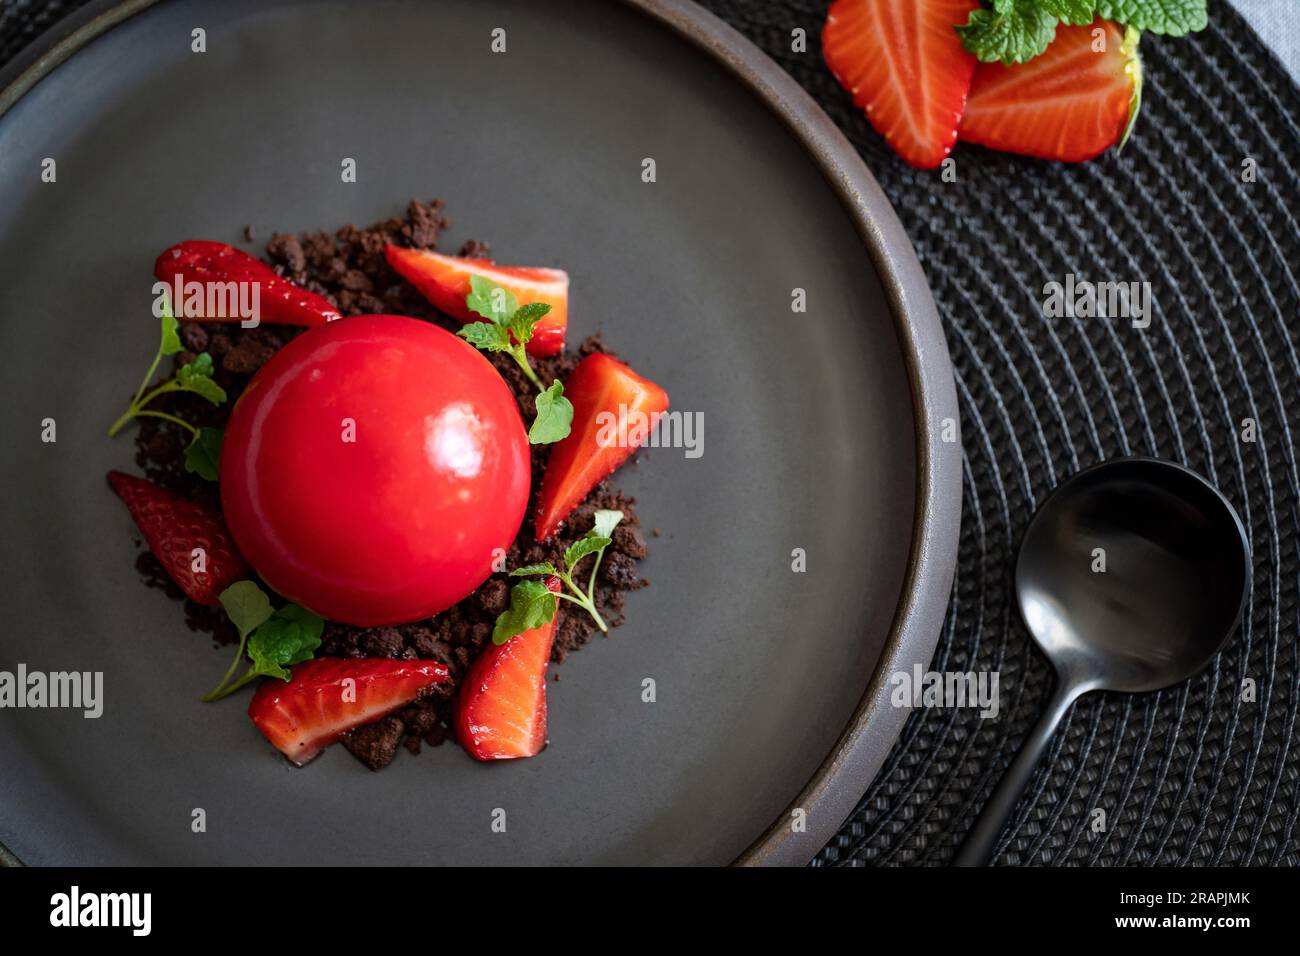 Draufsicht auf einen kugelförmigen Quark mit Erdbeeren und Brownies. Rotes Dessert mit glatten Oberflächen und Spiegelglasur auf dem schwarzen Teller mit schwarzem Löffel. Stockfoto